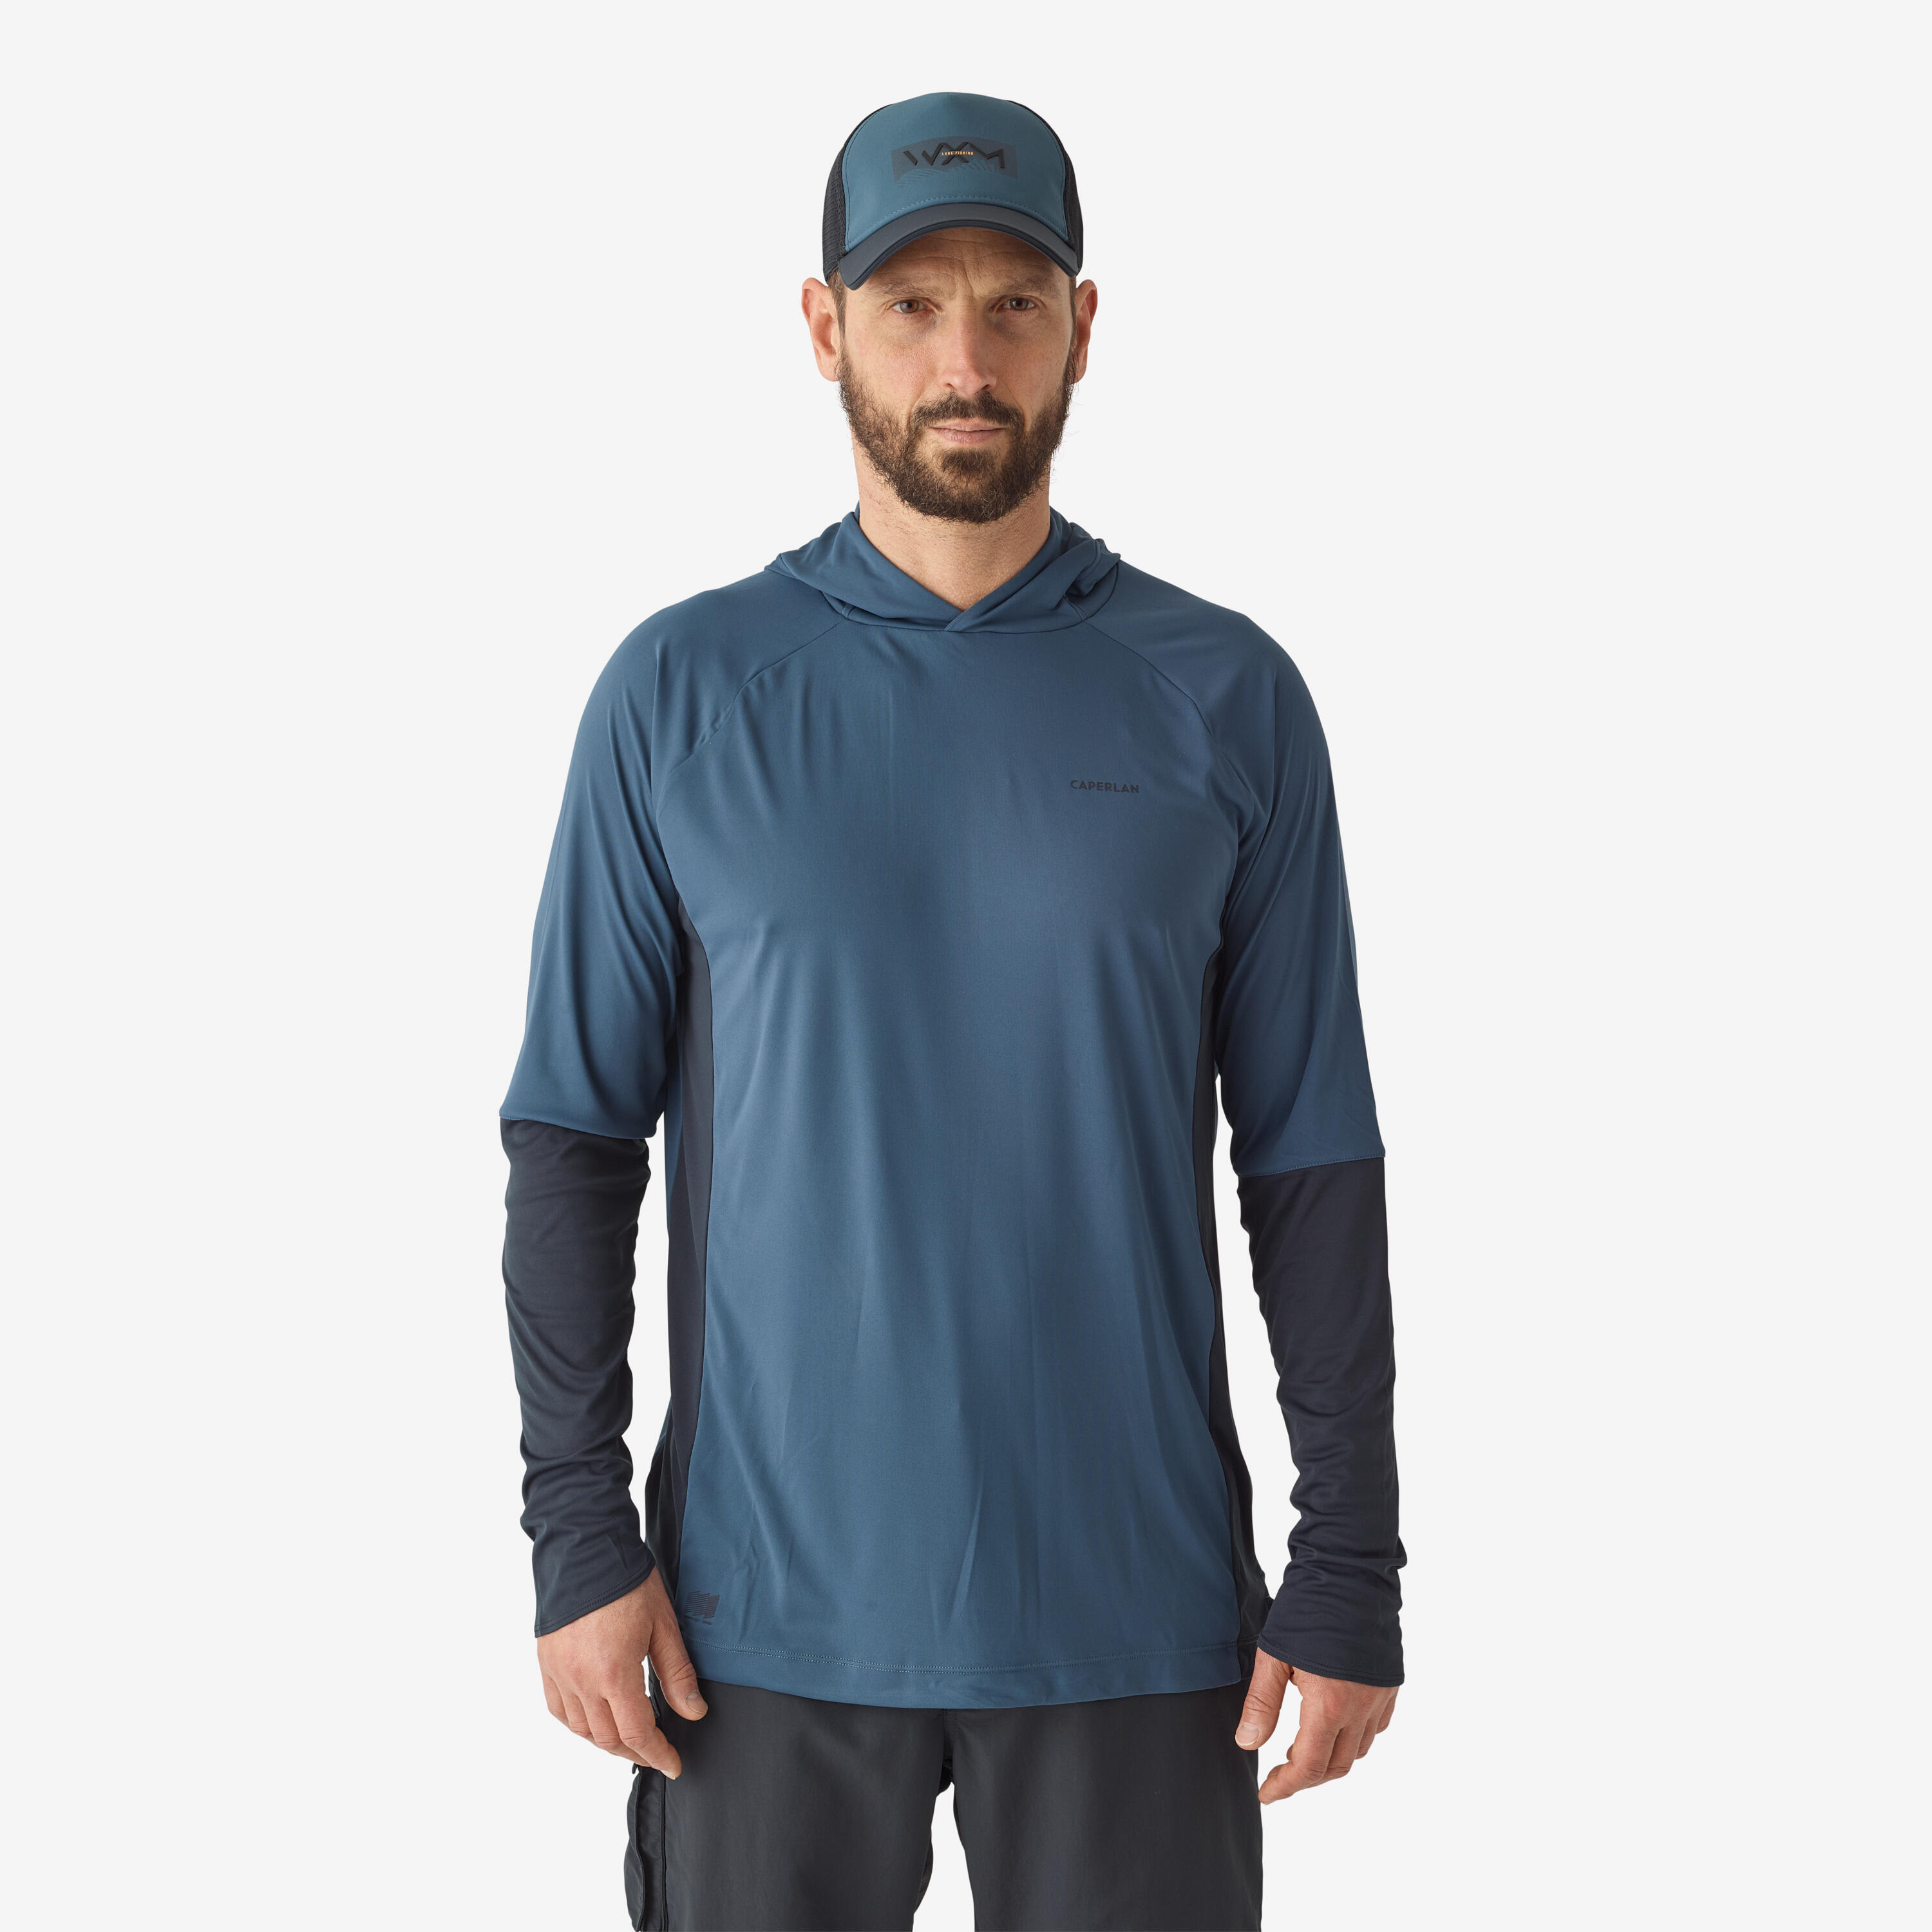 tee-shirt de pêche anti-uv 500 capuche bleu - caperlan